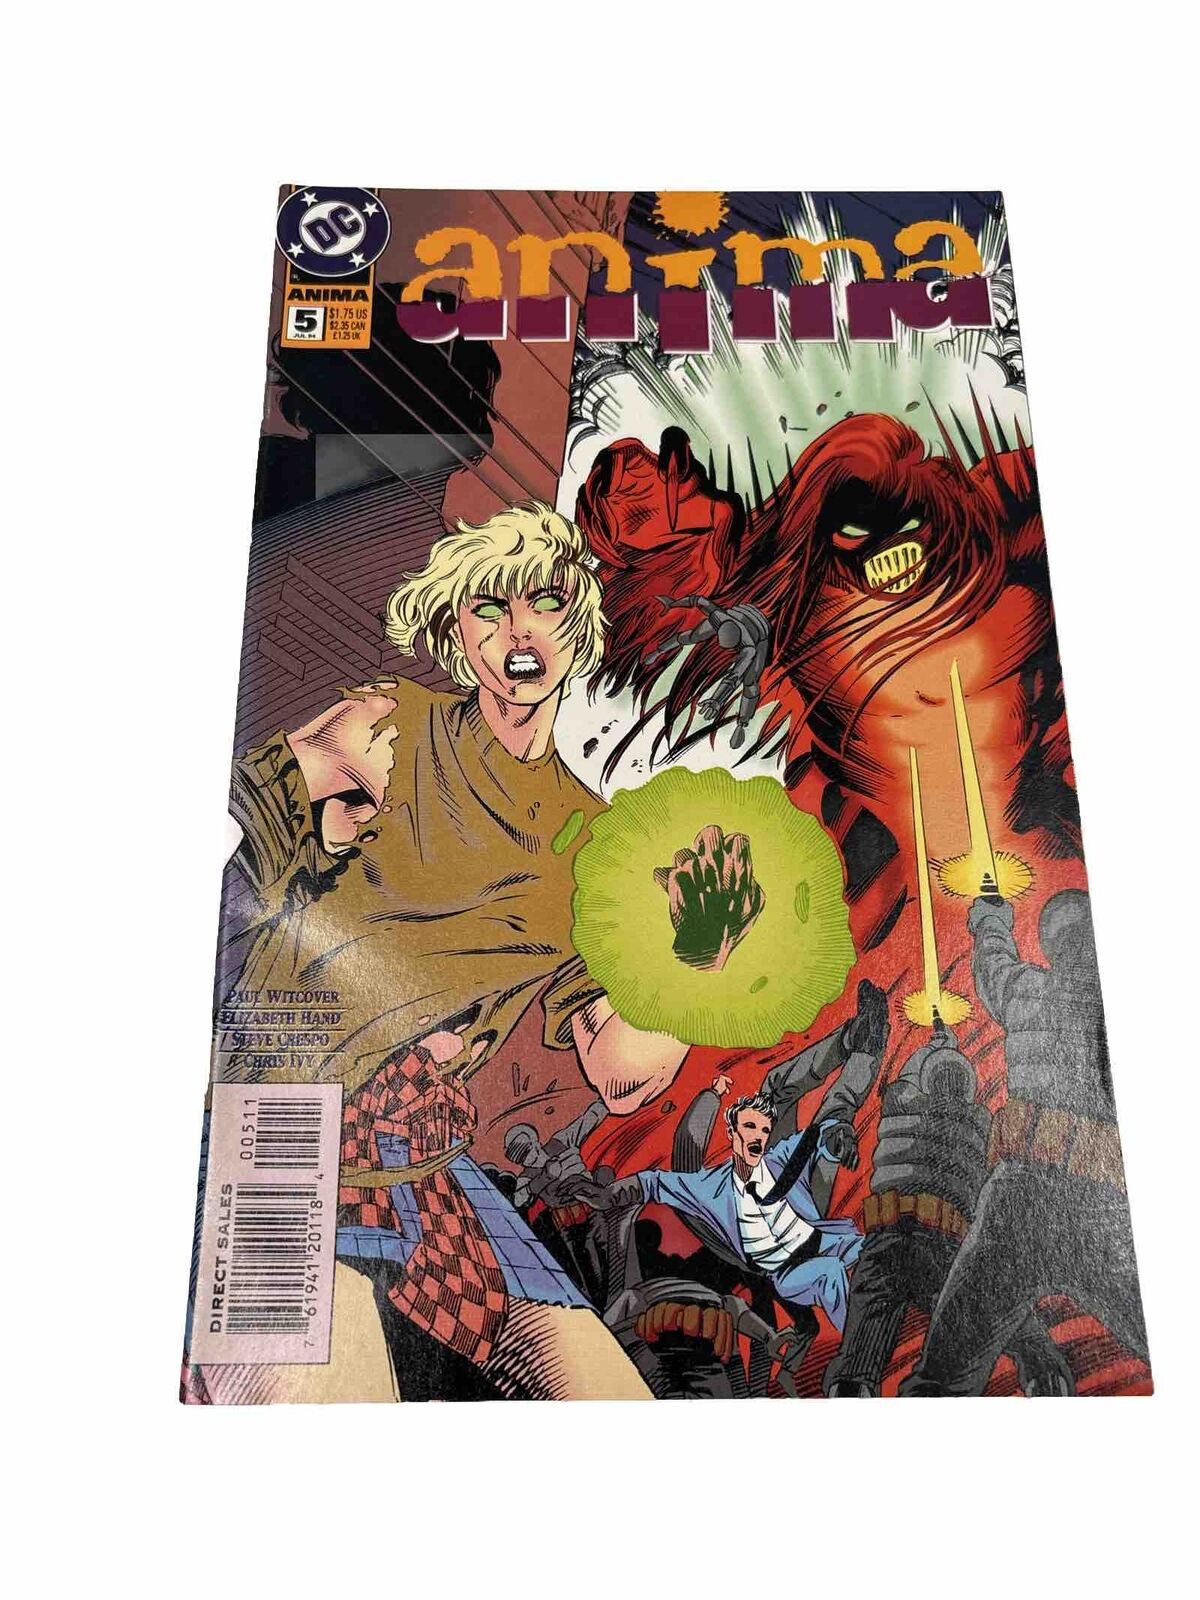 Anima #5 DC Comics VF/NM Condition (box52)